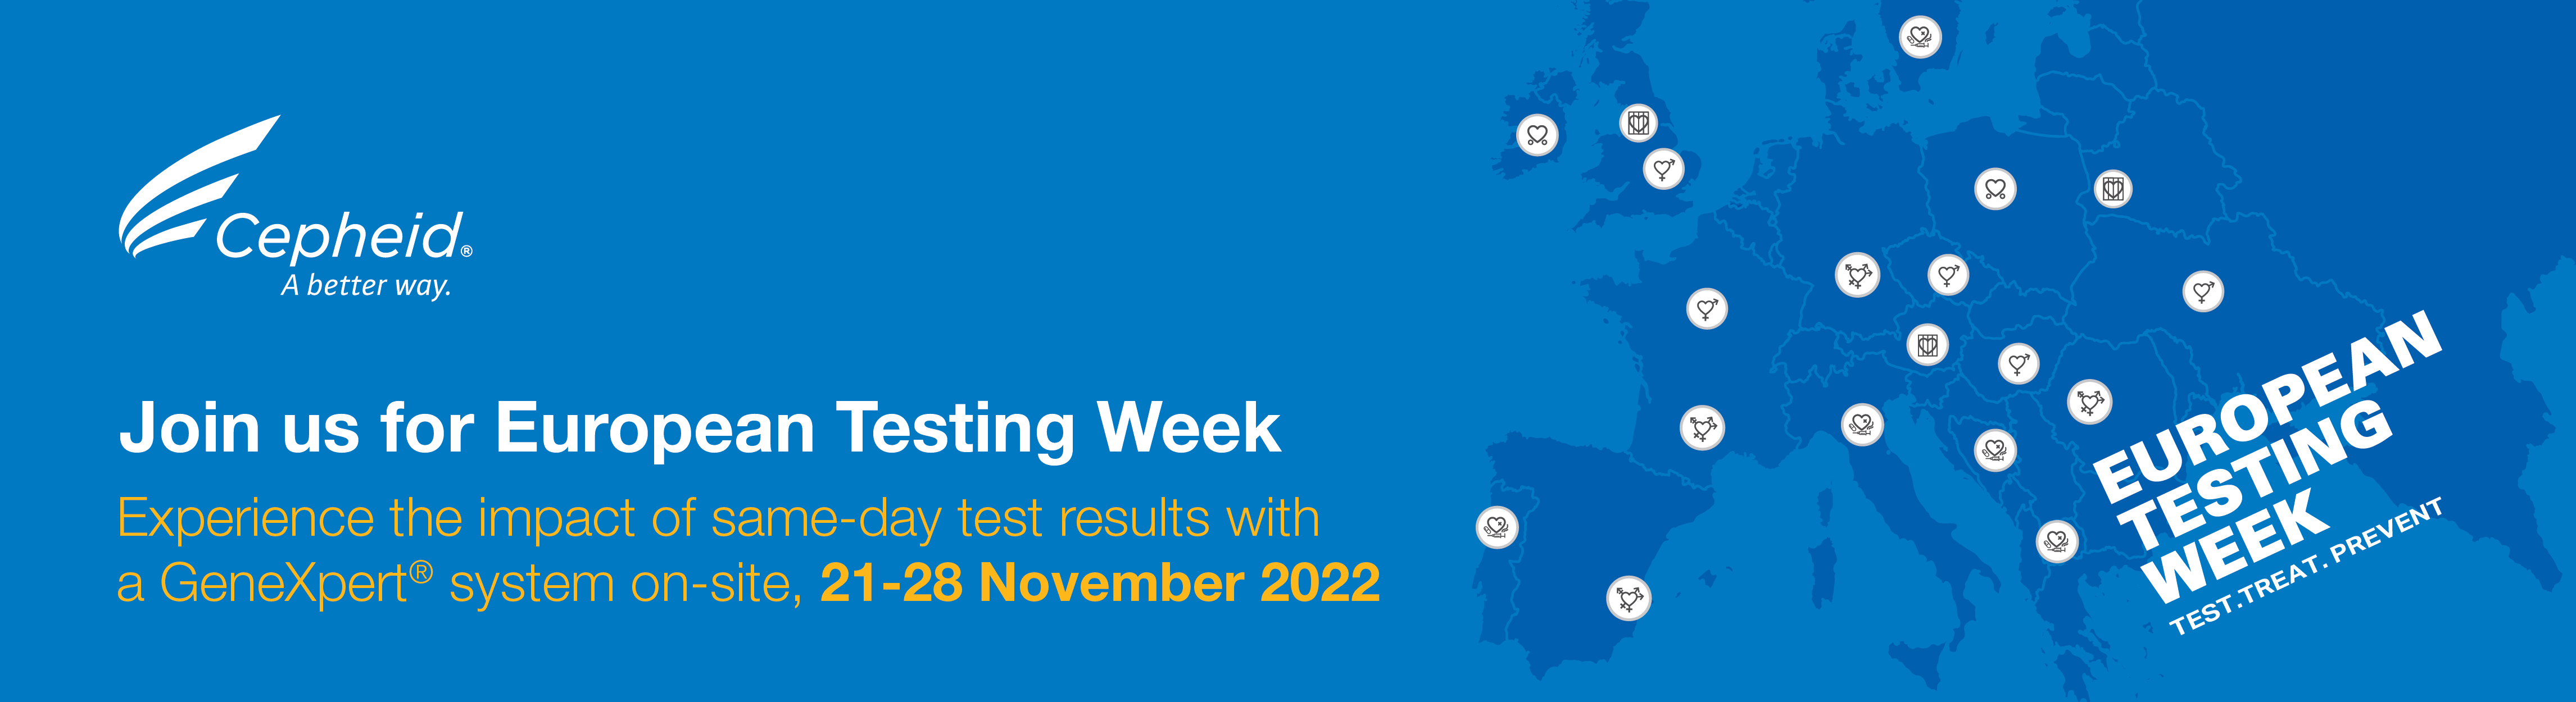 FEuropean Testing Week 2022